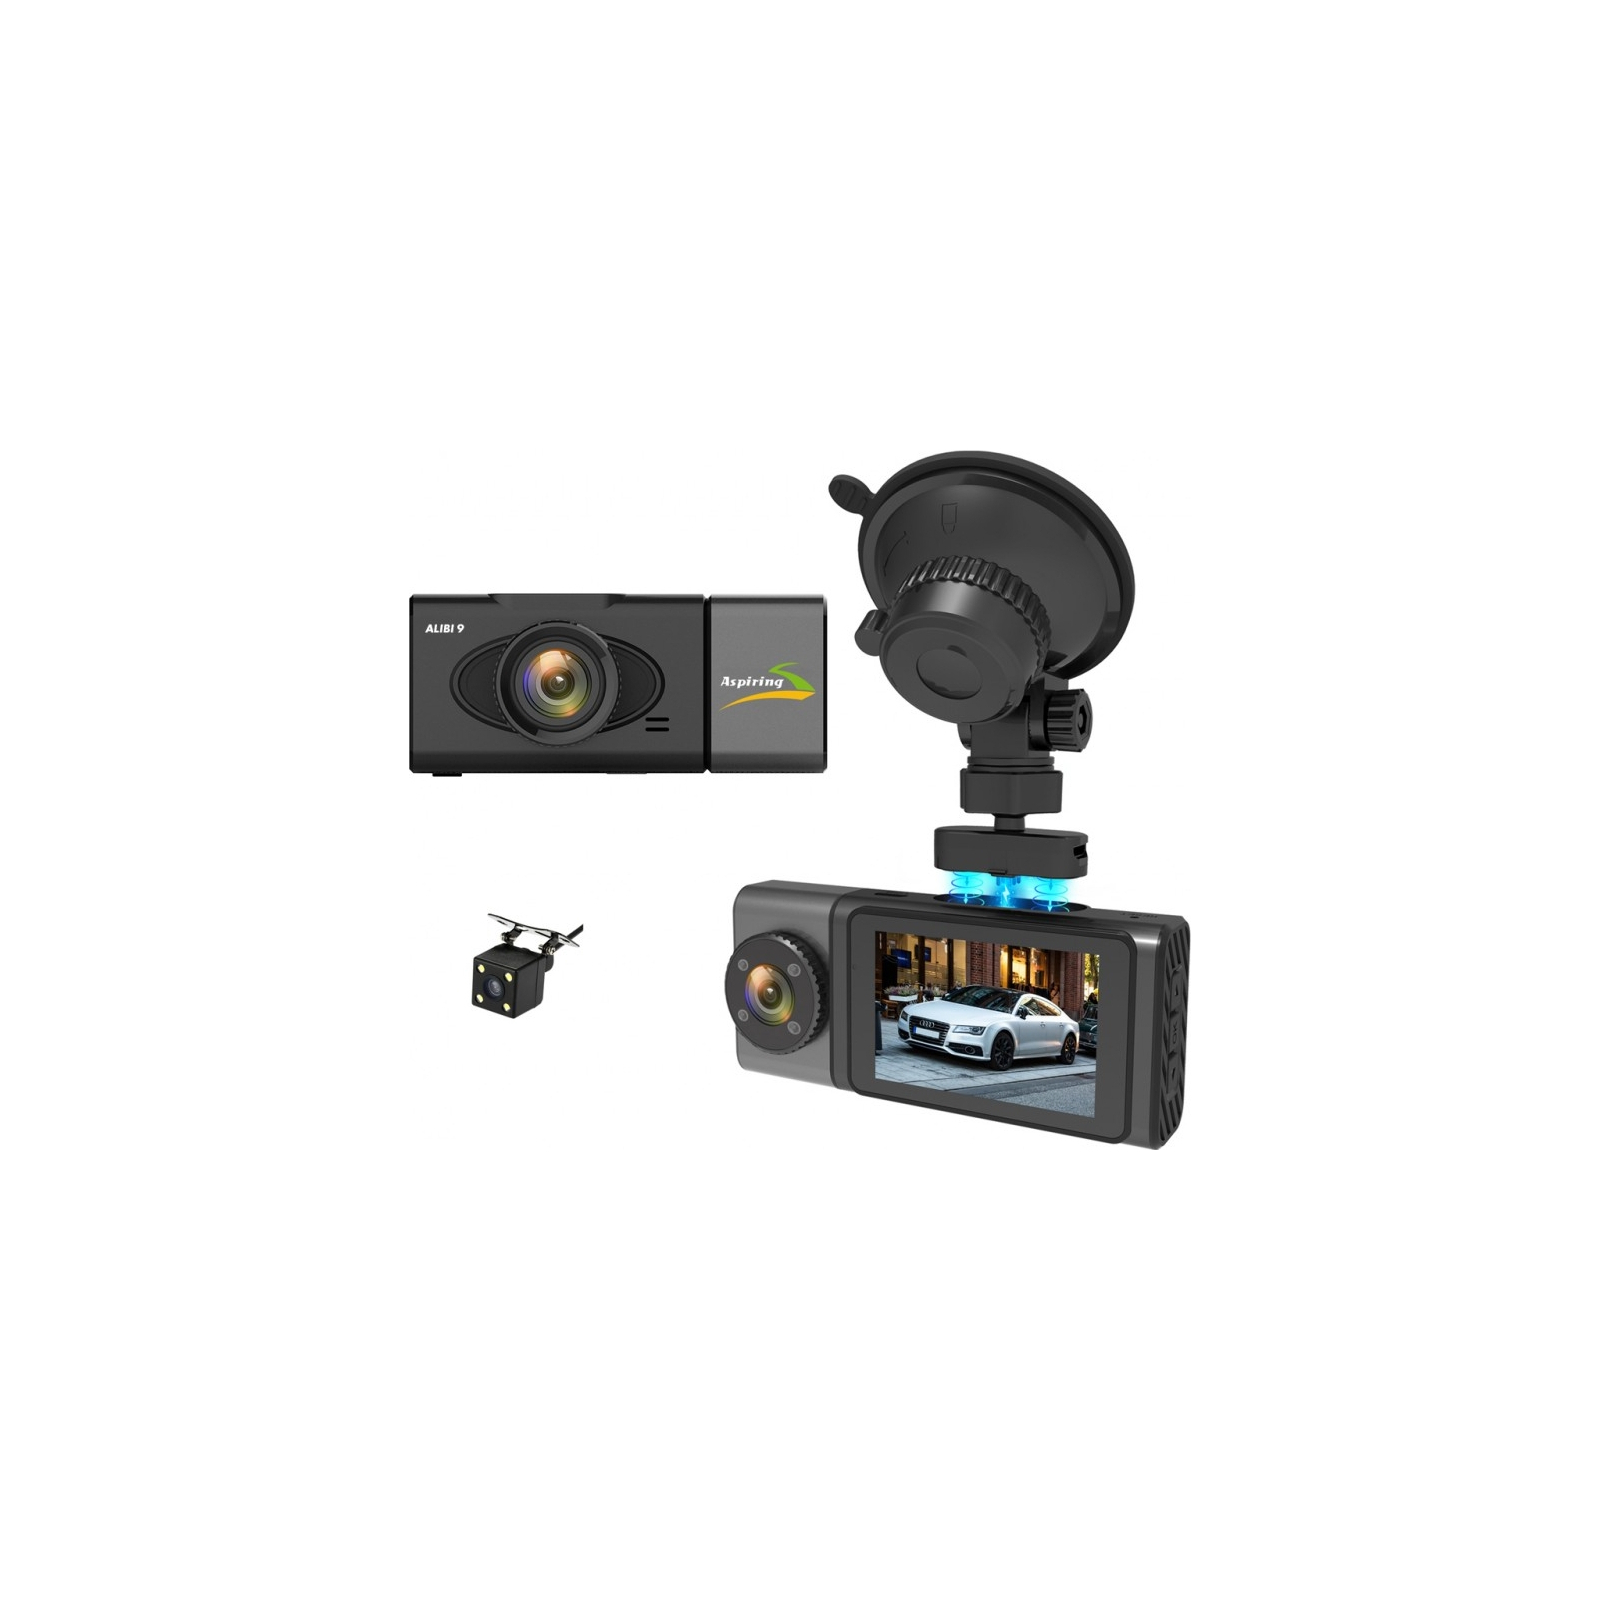 Видеорегистратор Aspiring Alibi 9 GPS, 3 Cameras, Speedcam (Aspiring Alibi 9 GPS, 3 Cameras, Speedcam) изображение 2